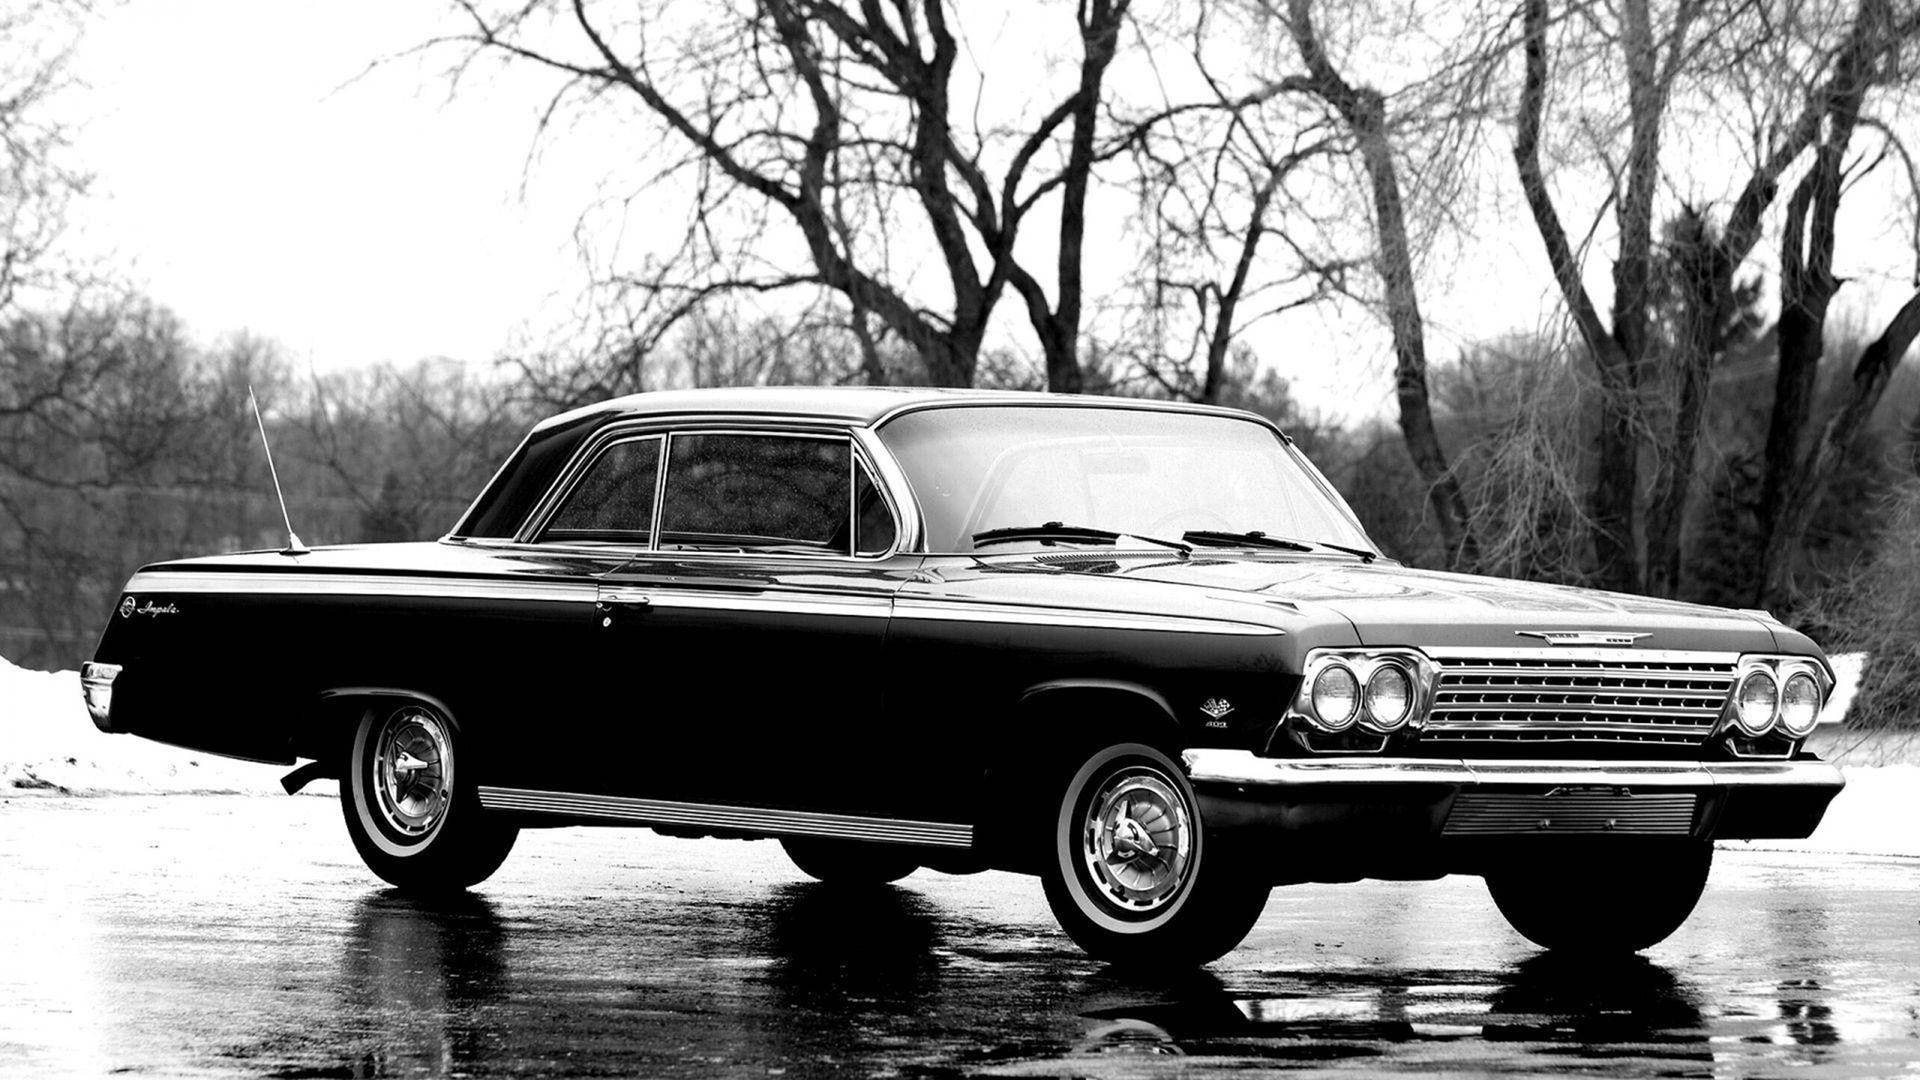 Chevroletimpala 1967 En Invierno. Fondo de pantalla